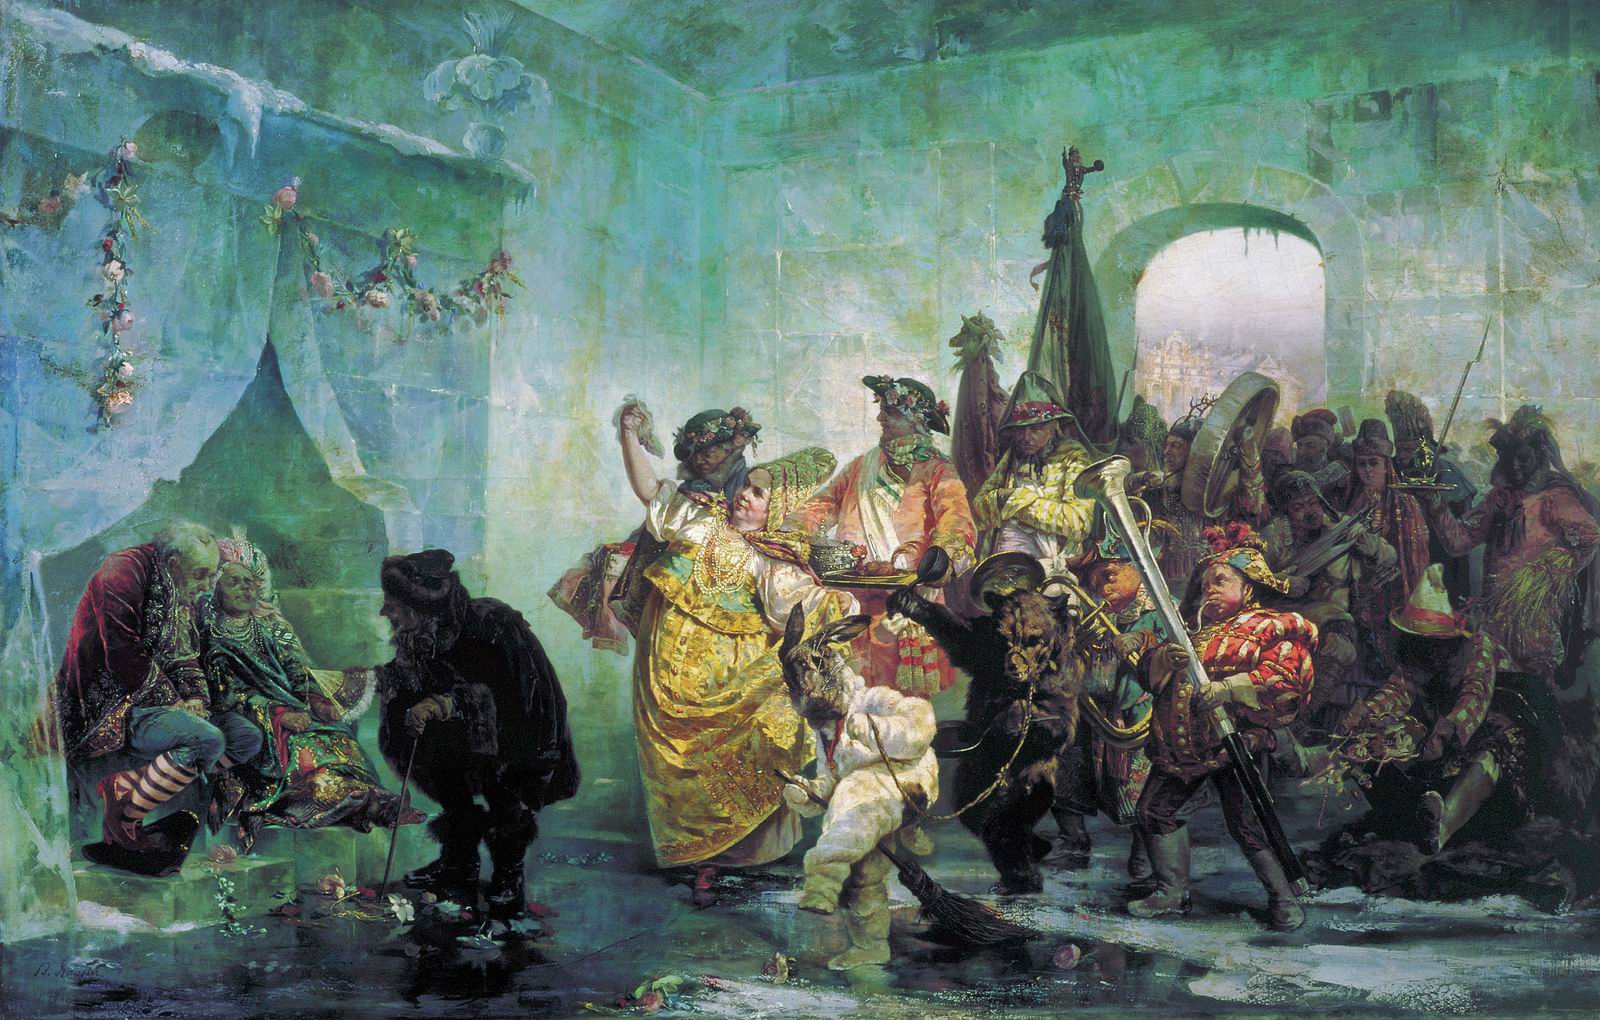 Валерий Якоби. "Ледяной дом". 1878.